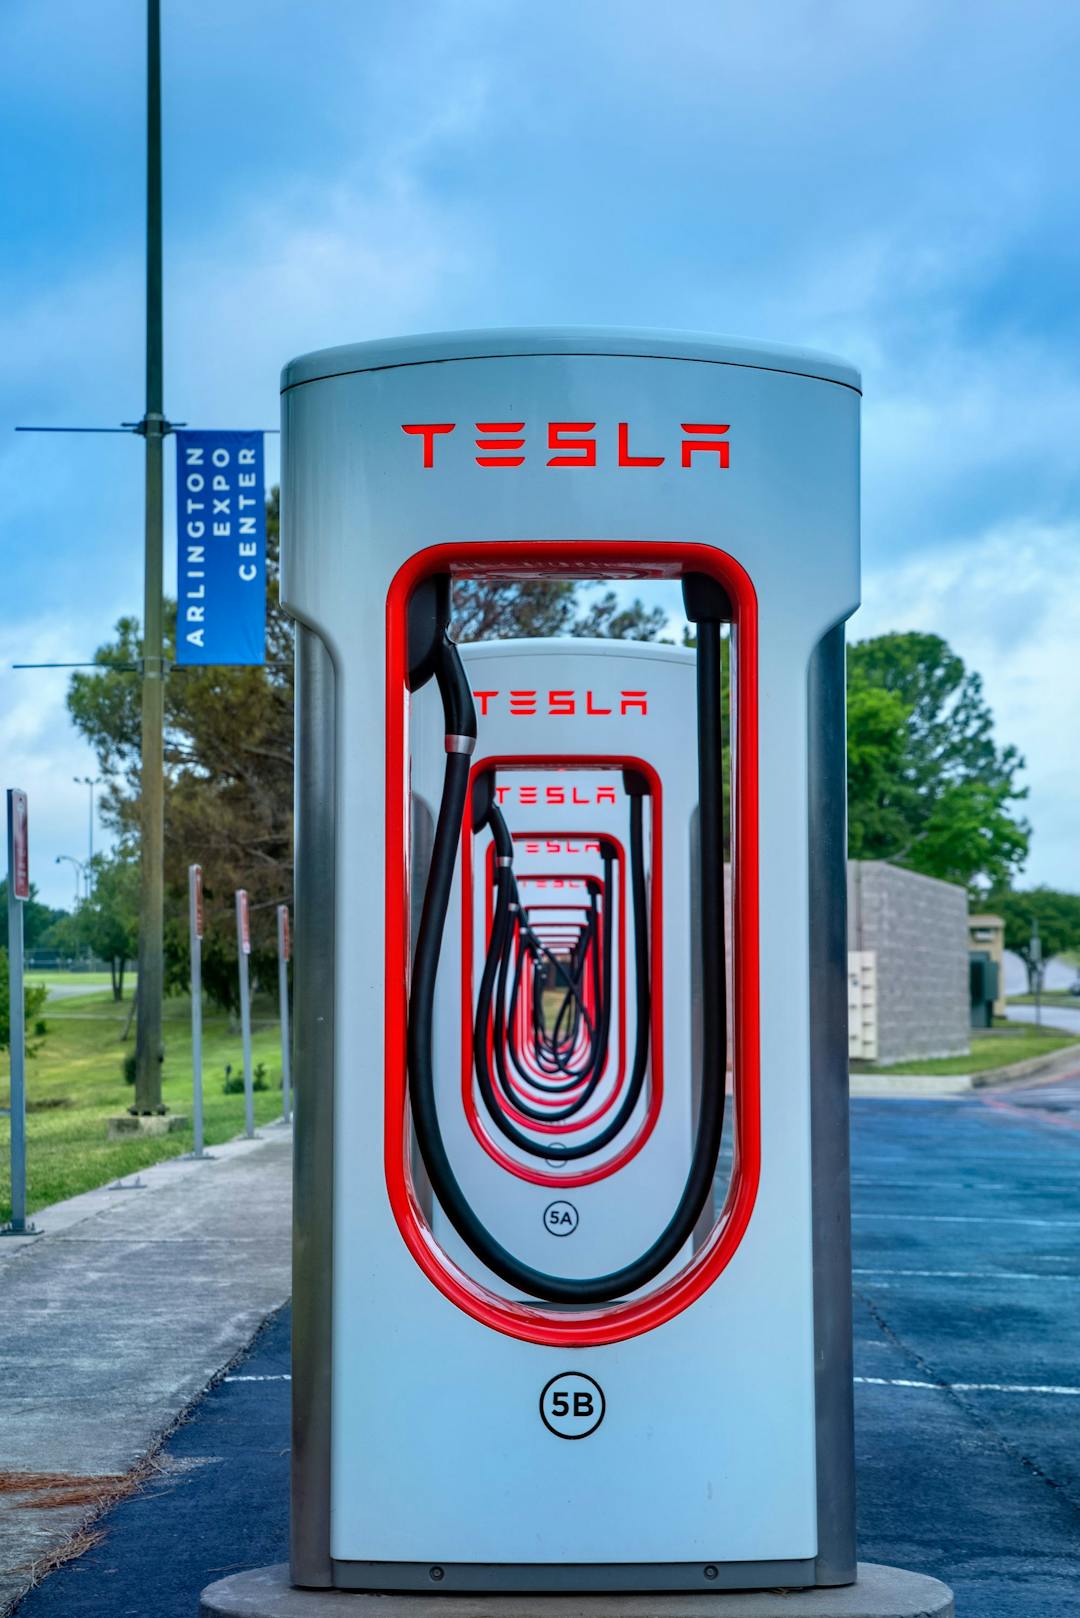 Tesla Supercharger station in U.S.